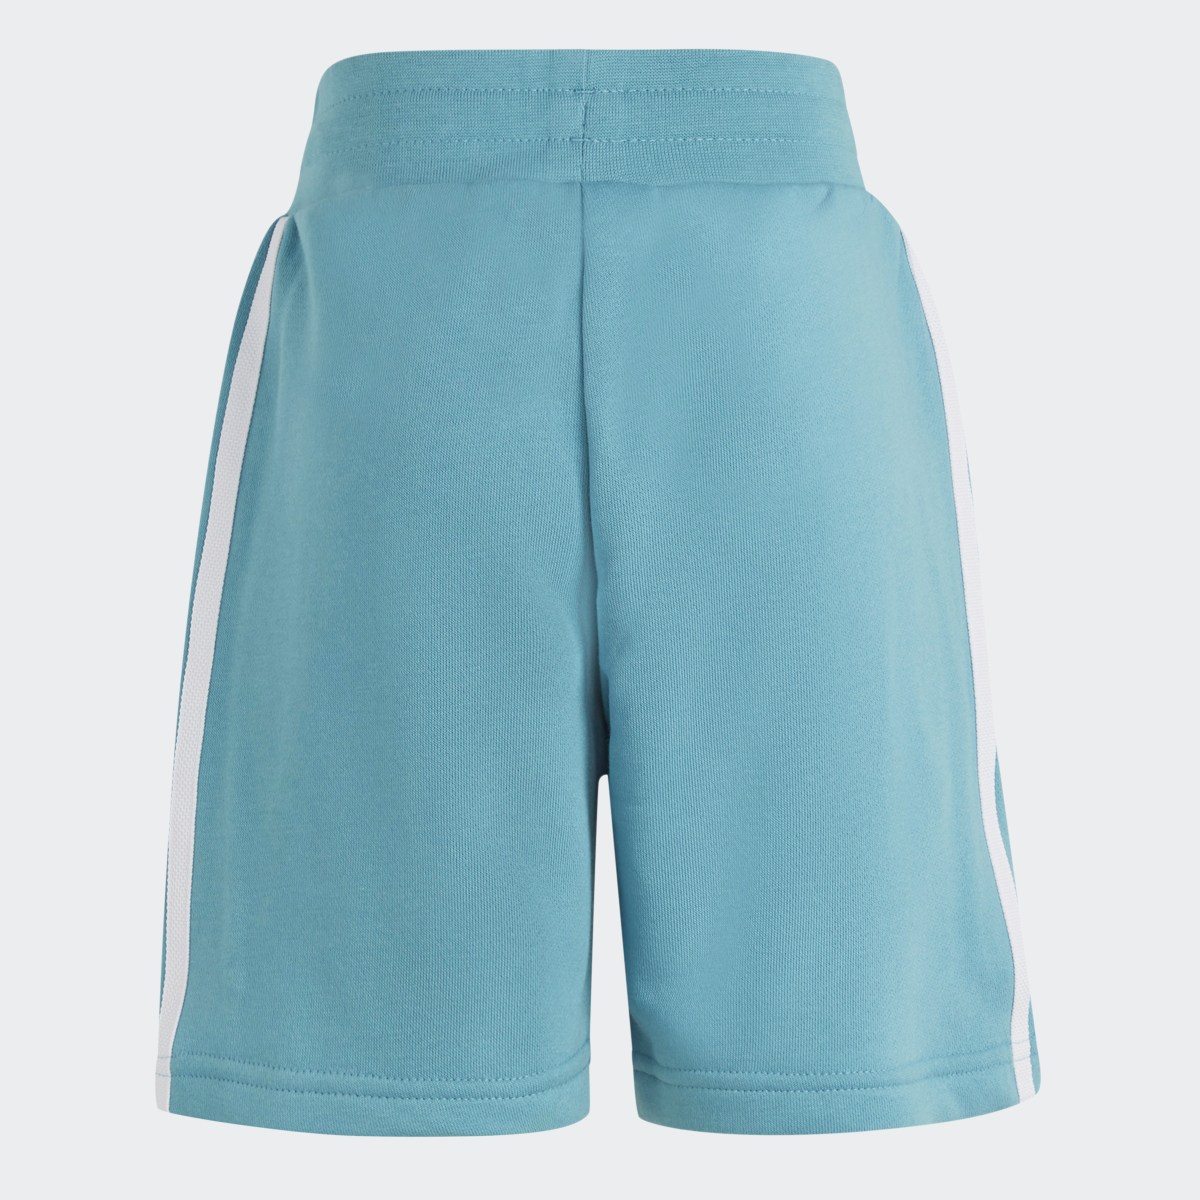 Adidas Adicolor Shorts and Tee Set. 10